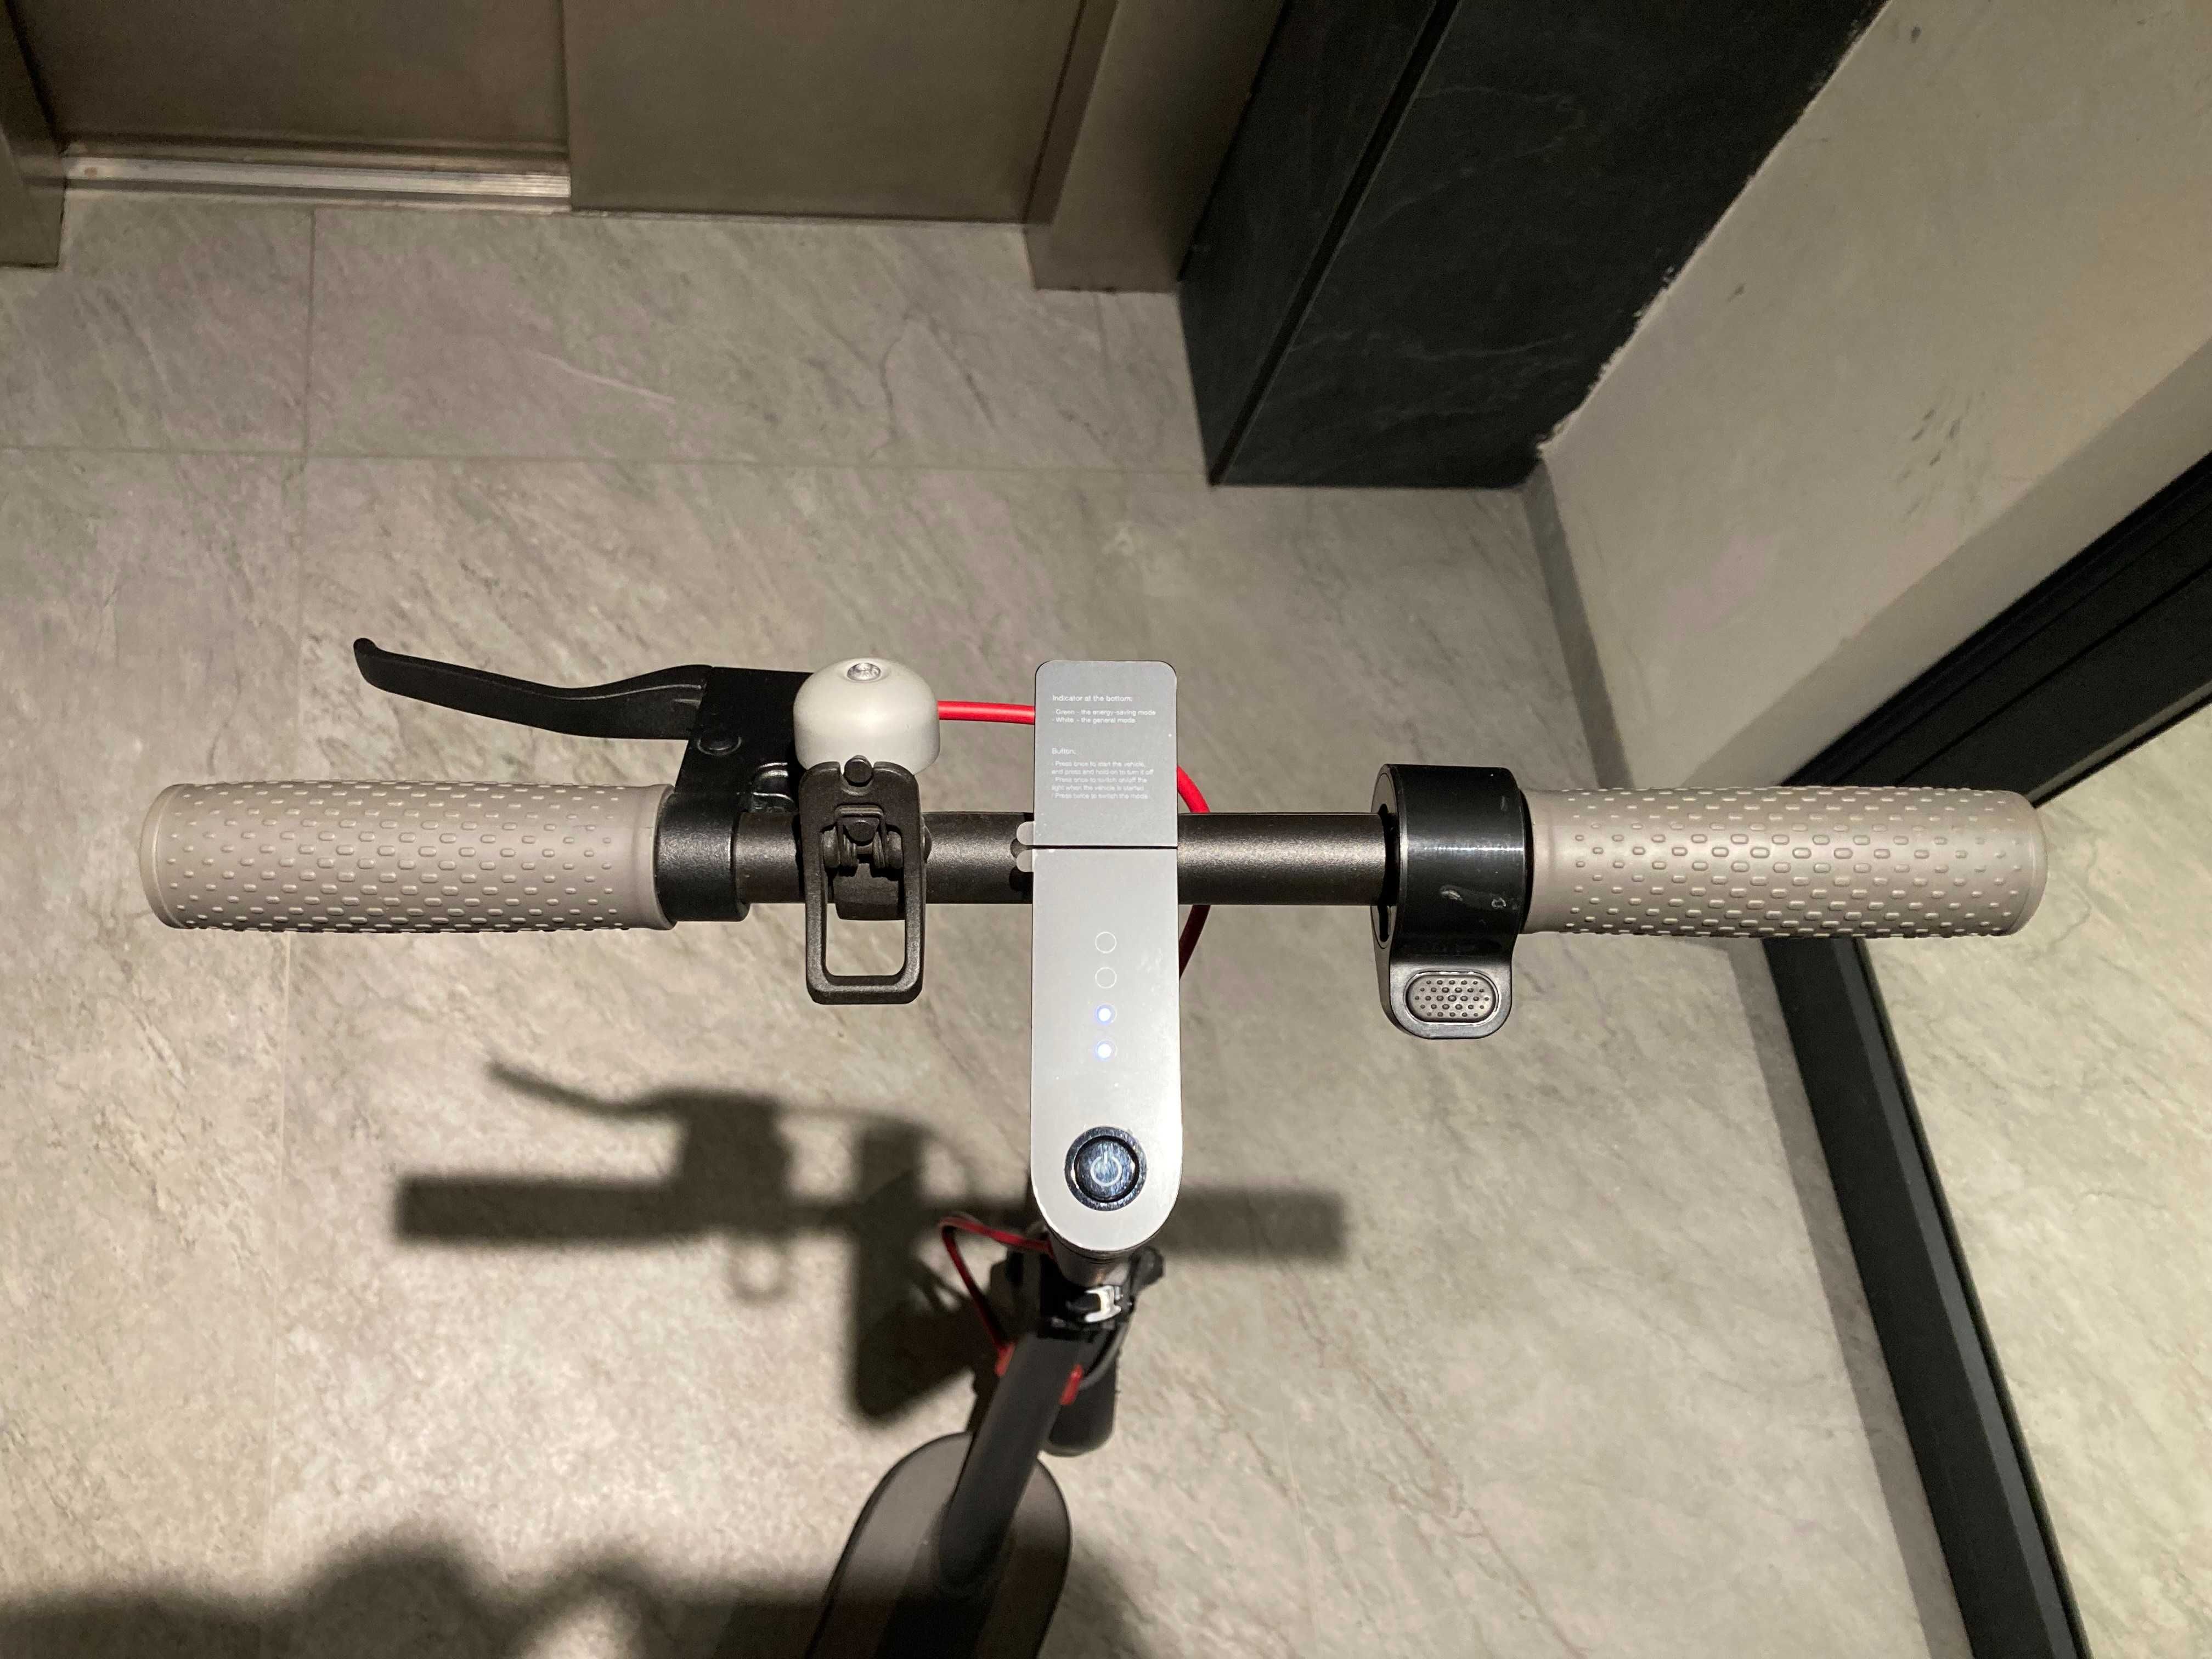 Електрически скутер - тротинетка Xiaomi m365 на 140 км